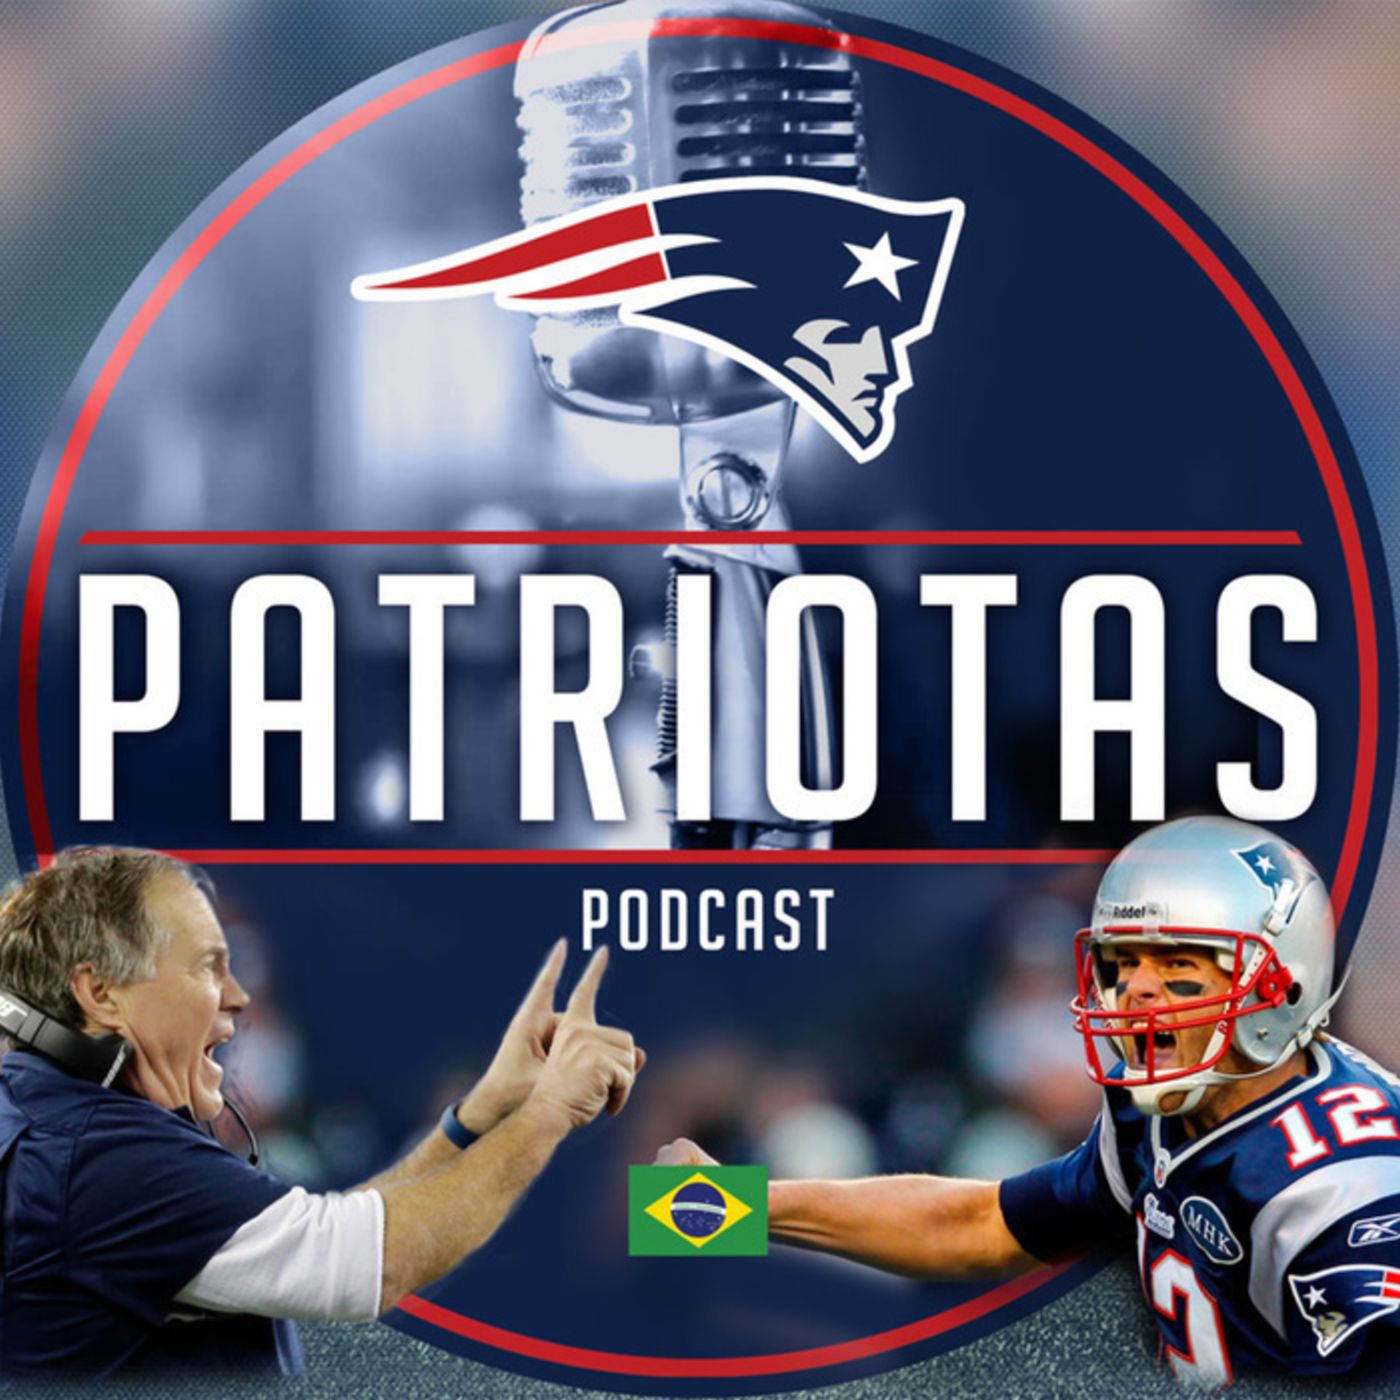 Podcast Patriotas 130 - Calendário Patriots 2018